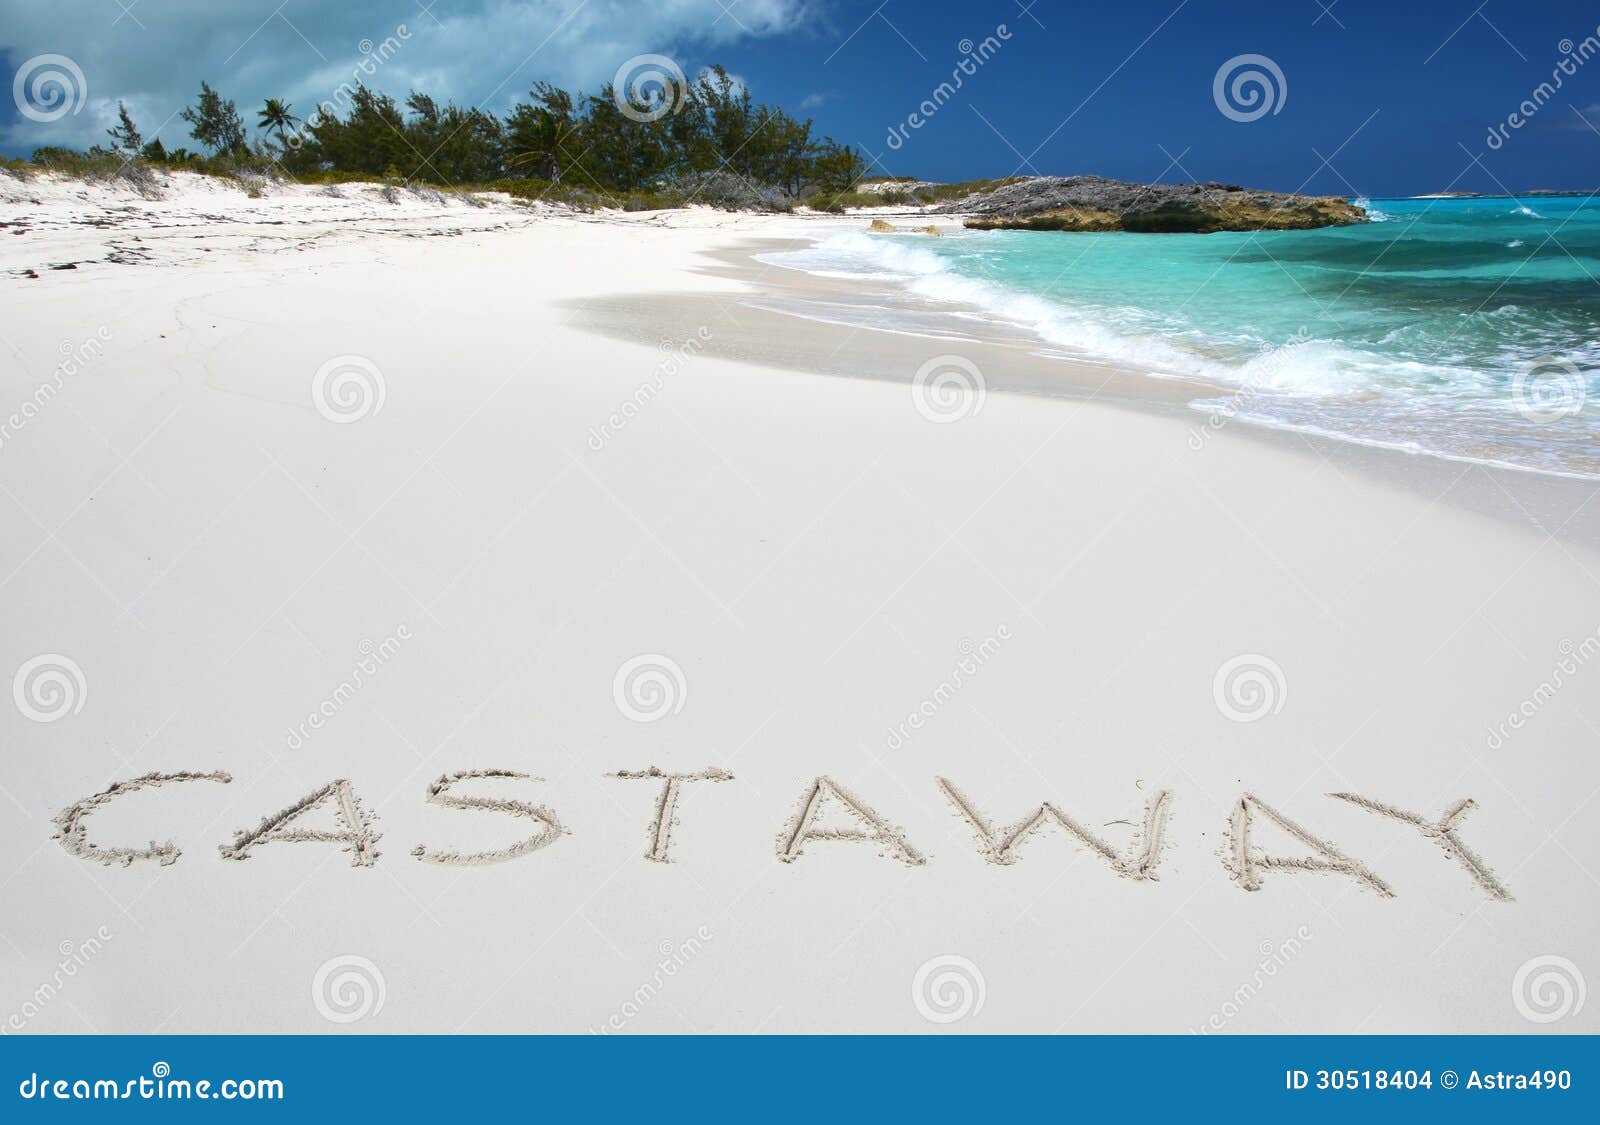 castaway writing on a desert beach